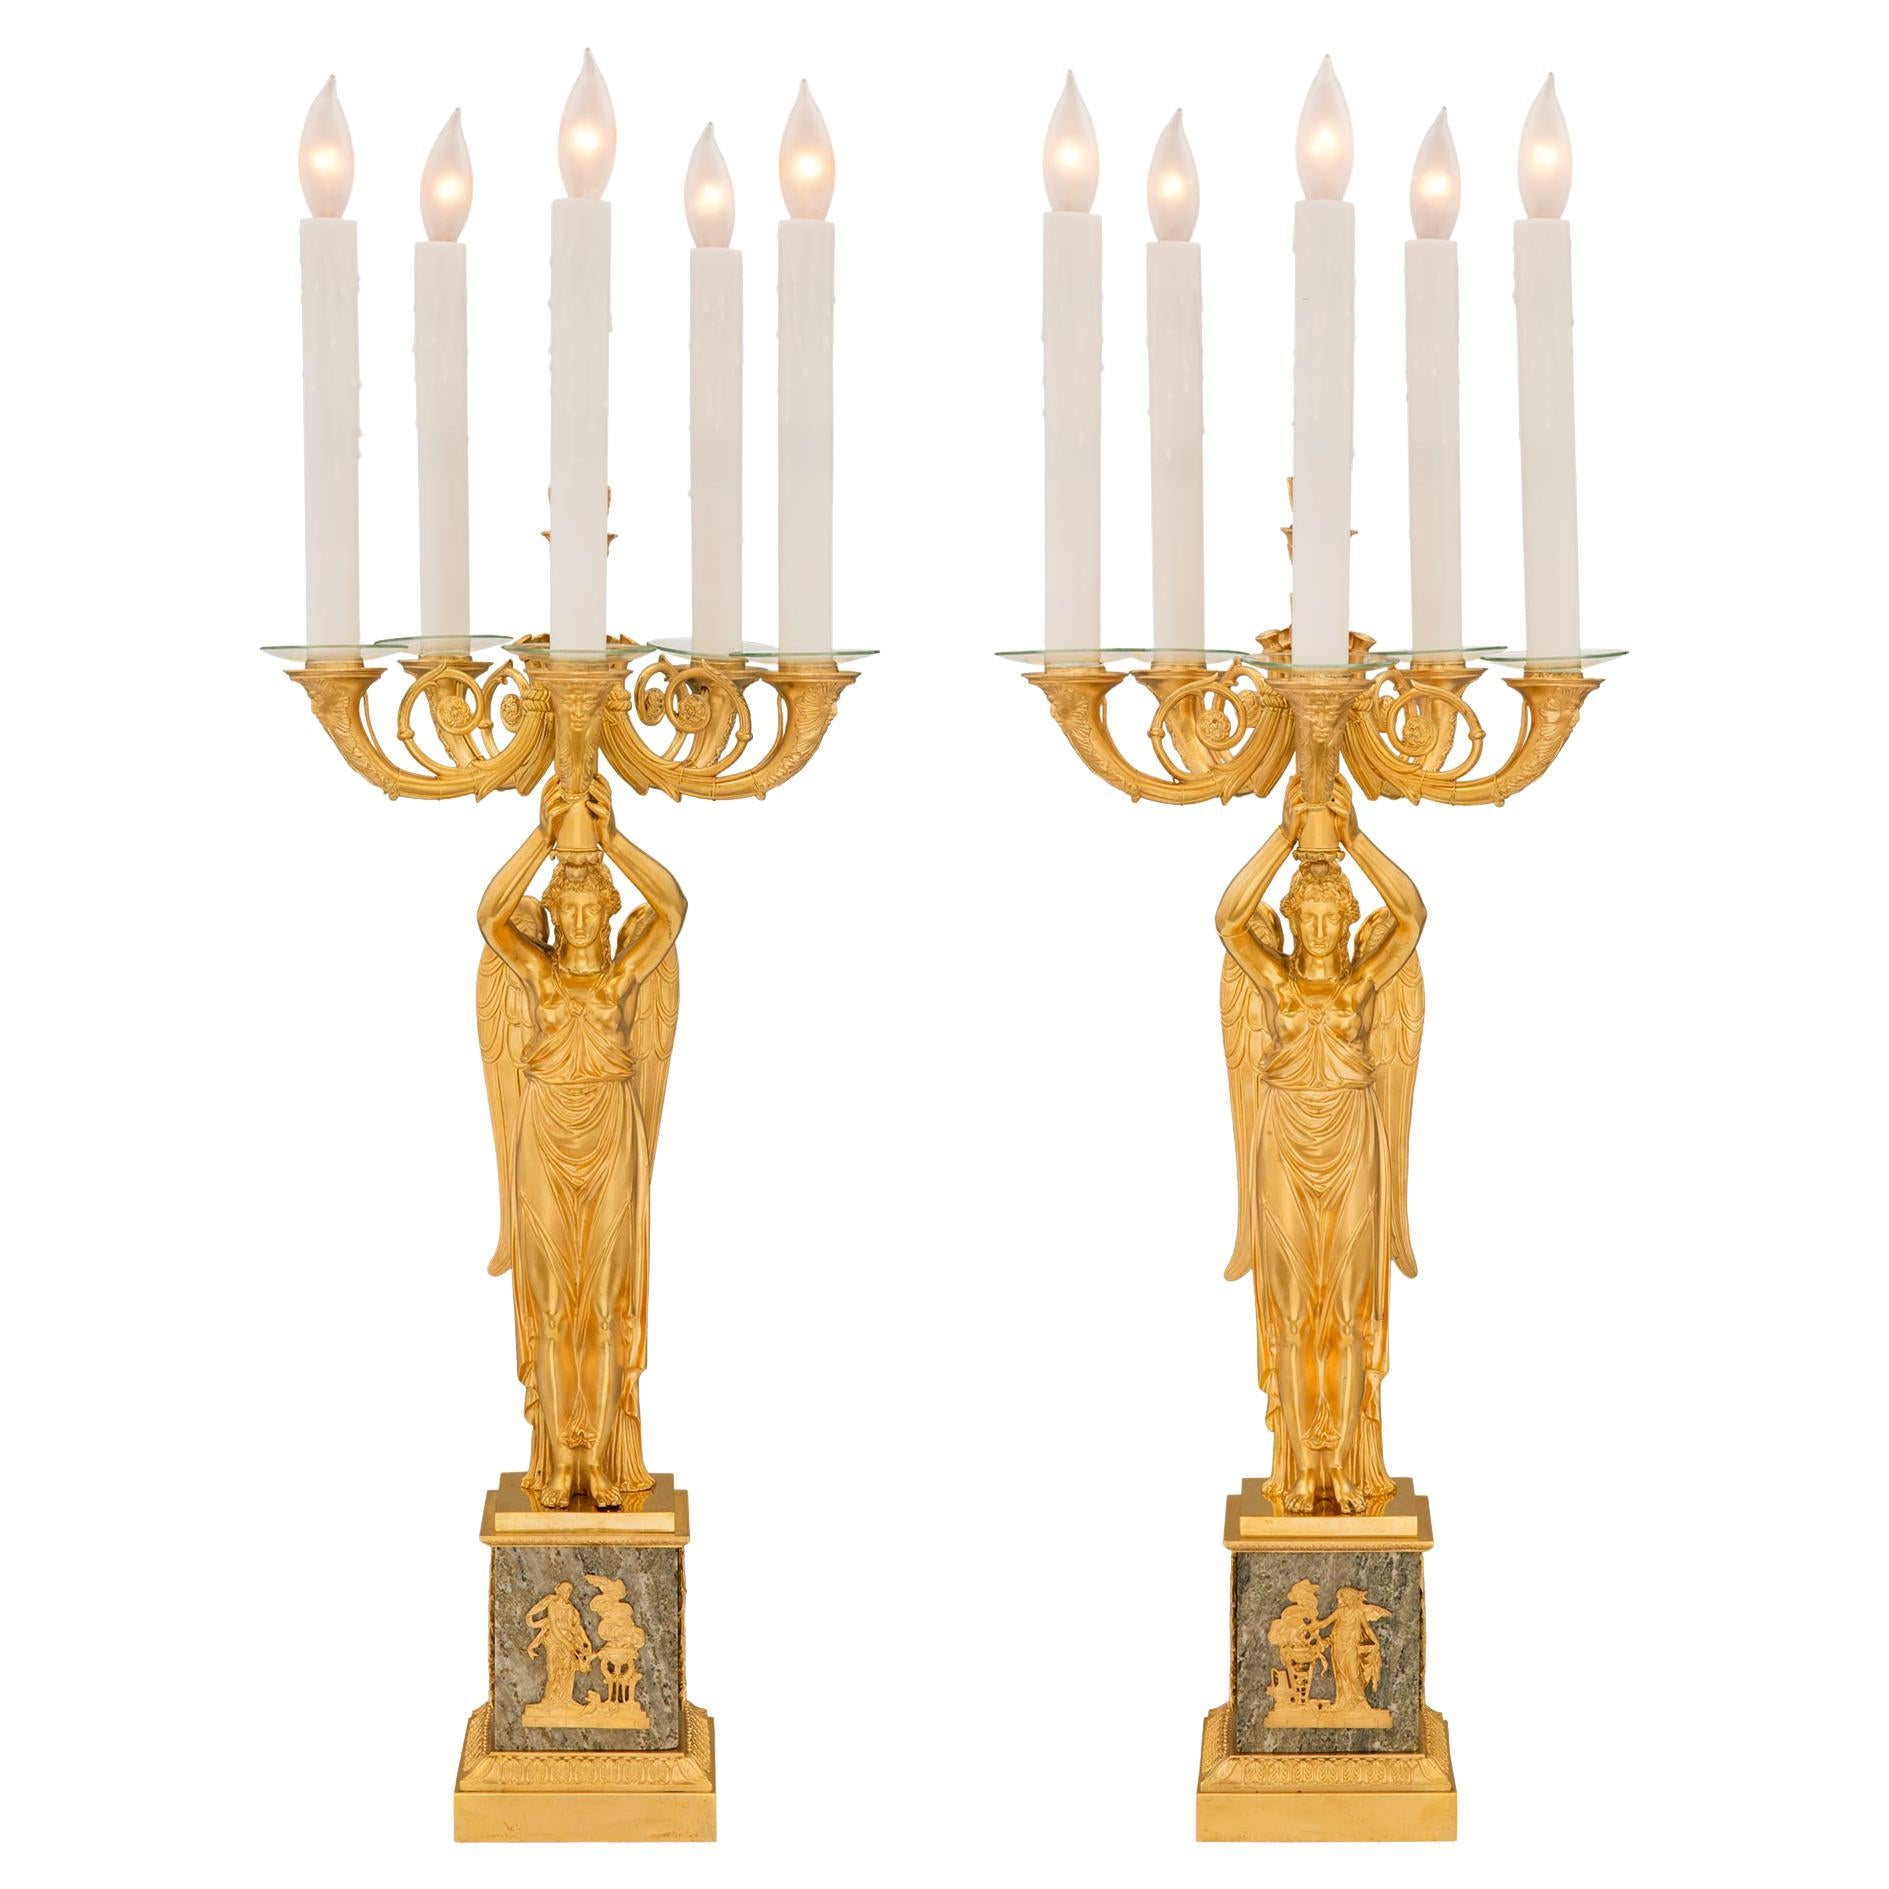 Lampes à cinq bras de style Empire français du XIXe siècle en bronze doré et granit